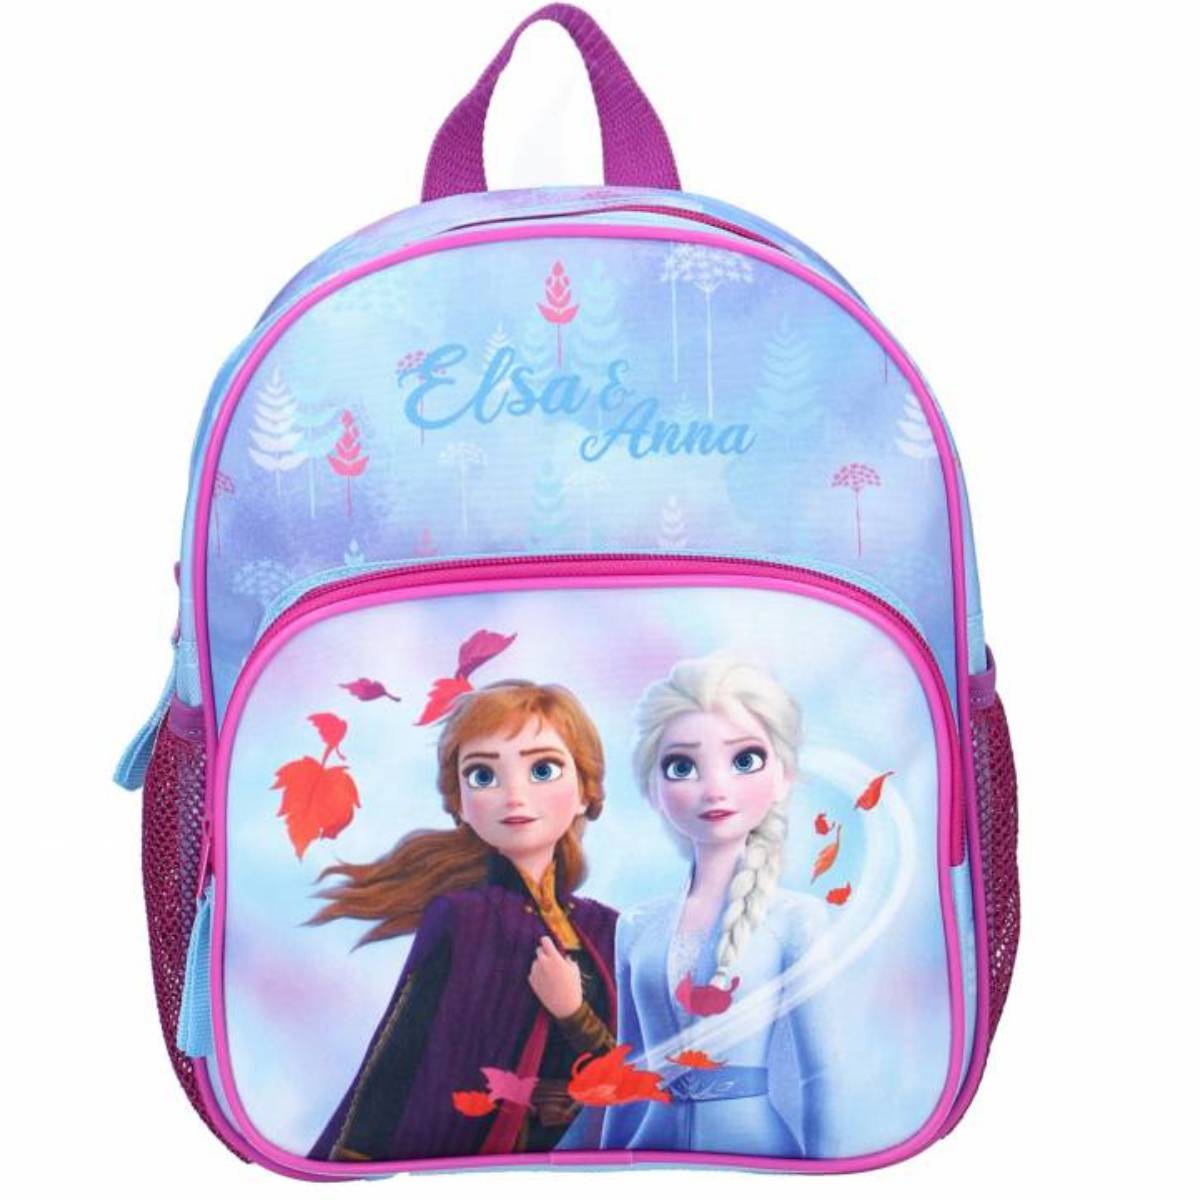 Small Backpack Kindergarten Disney frozen 2 30cm